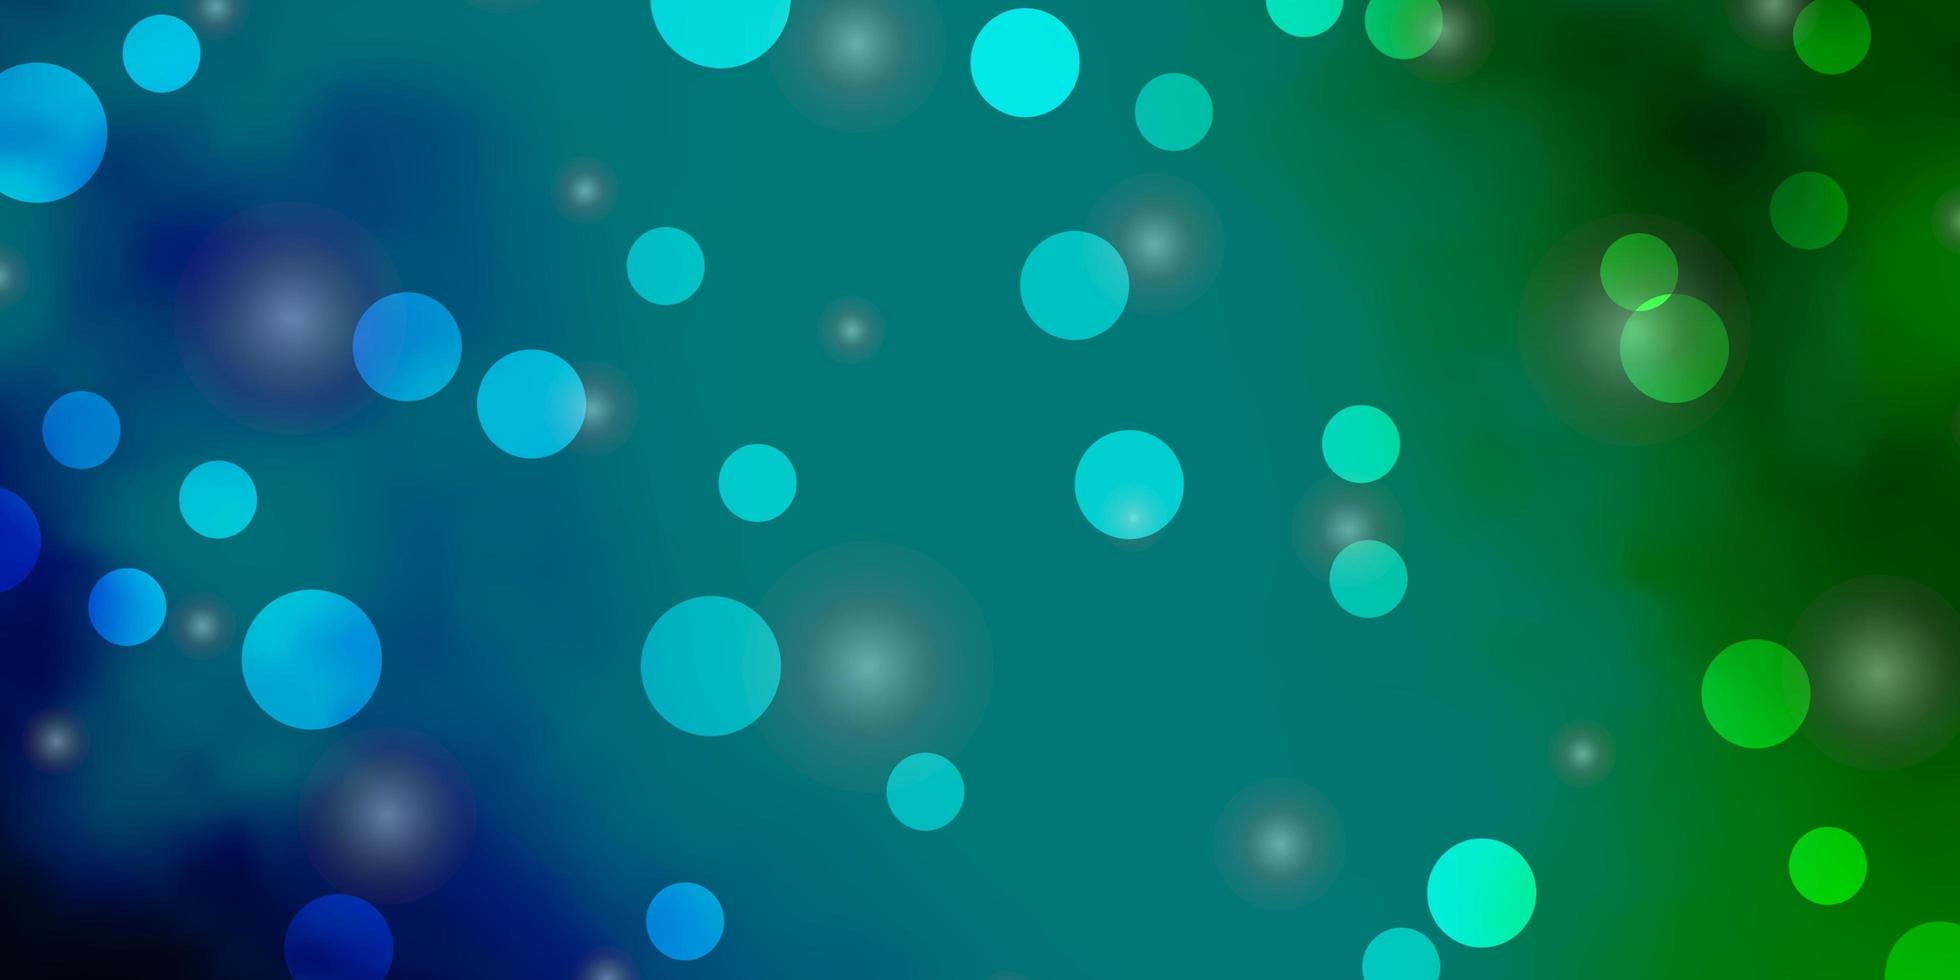 struttura di vettore blu chiaro, verde con cerchi, stelle.